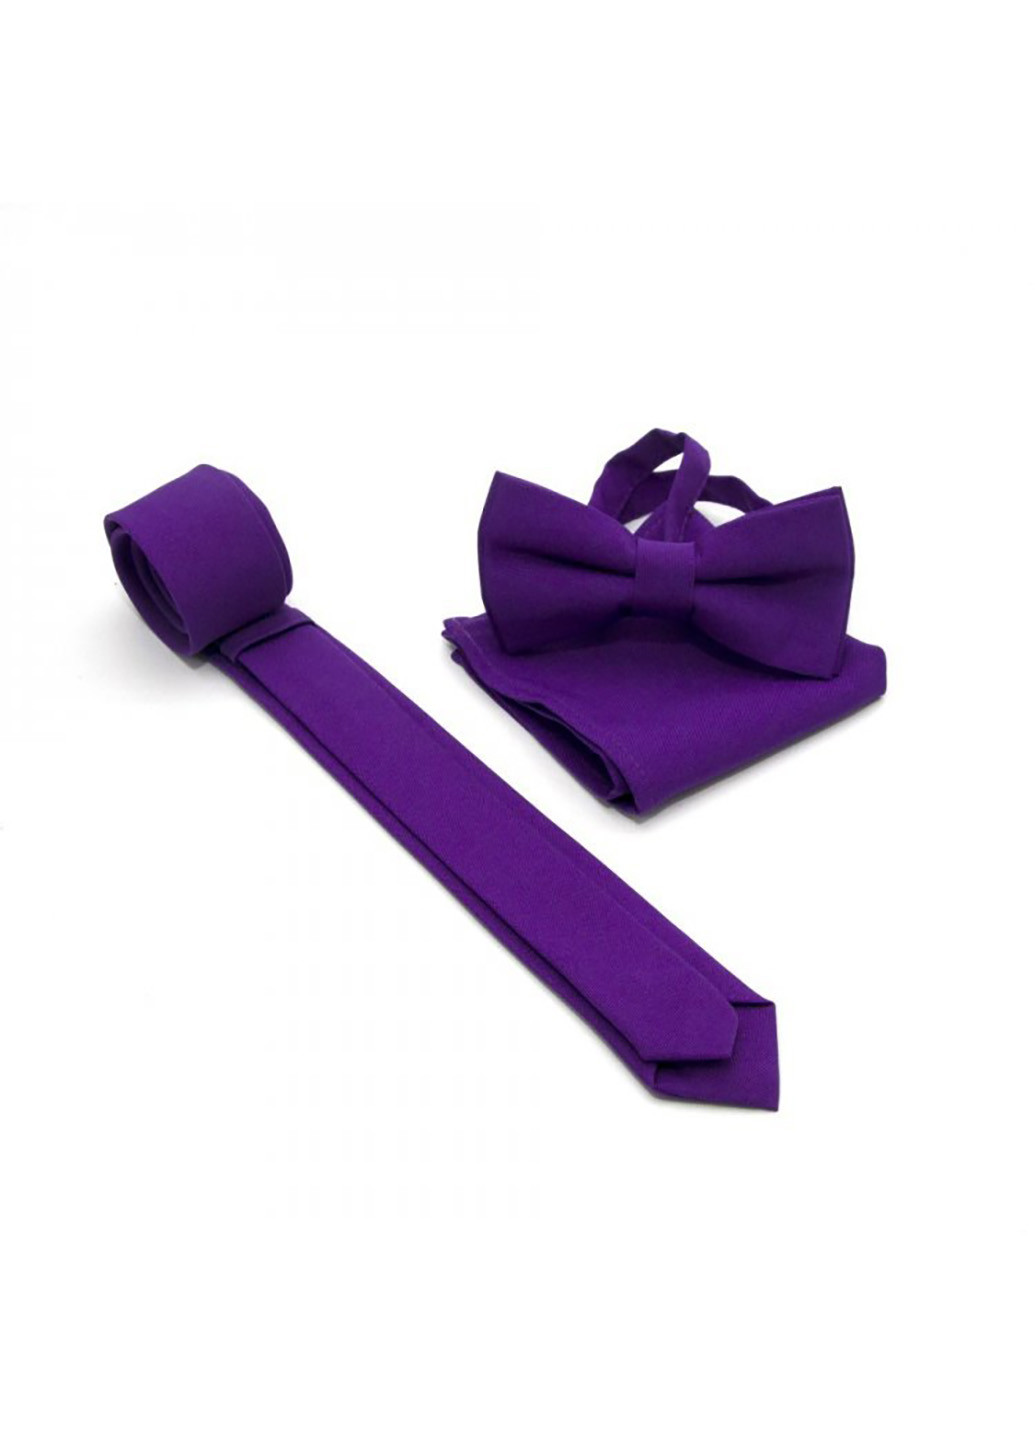 Набор 3в1 галстук, бабочка, платок 6х12, 21х21 см GOFIN (219904888)